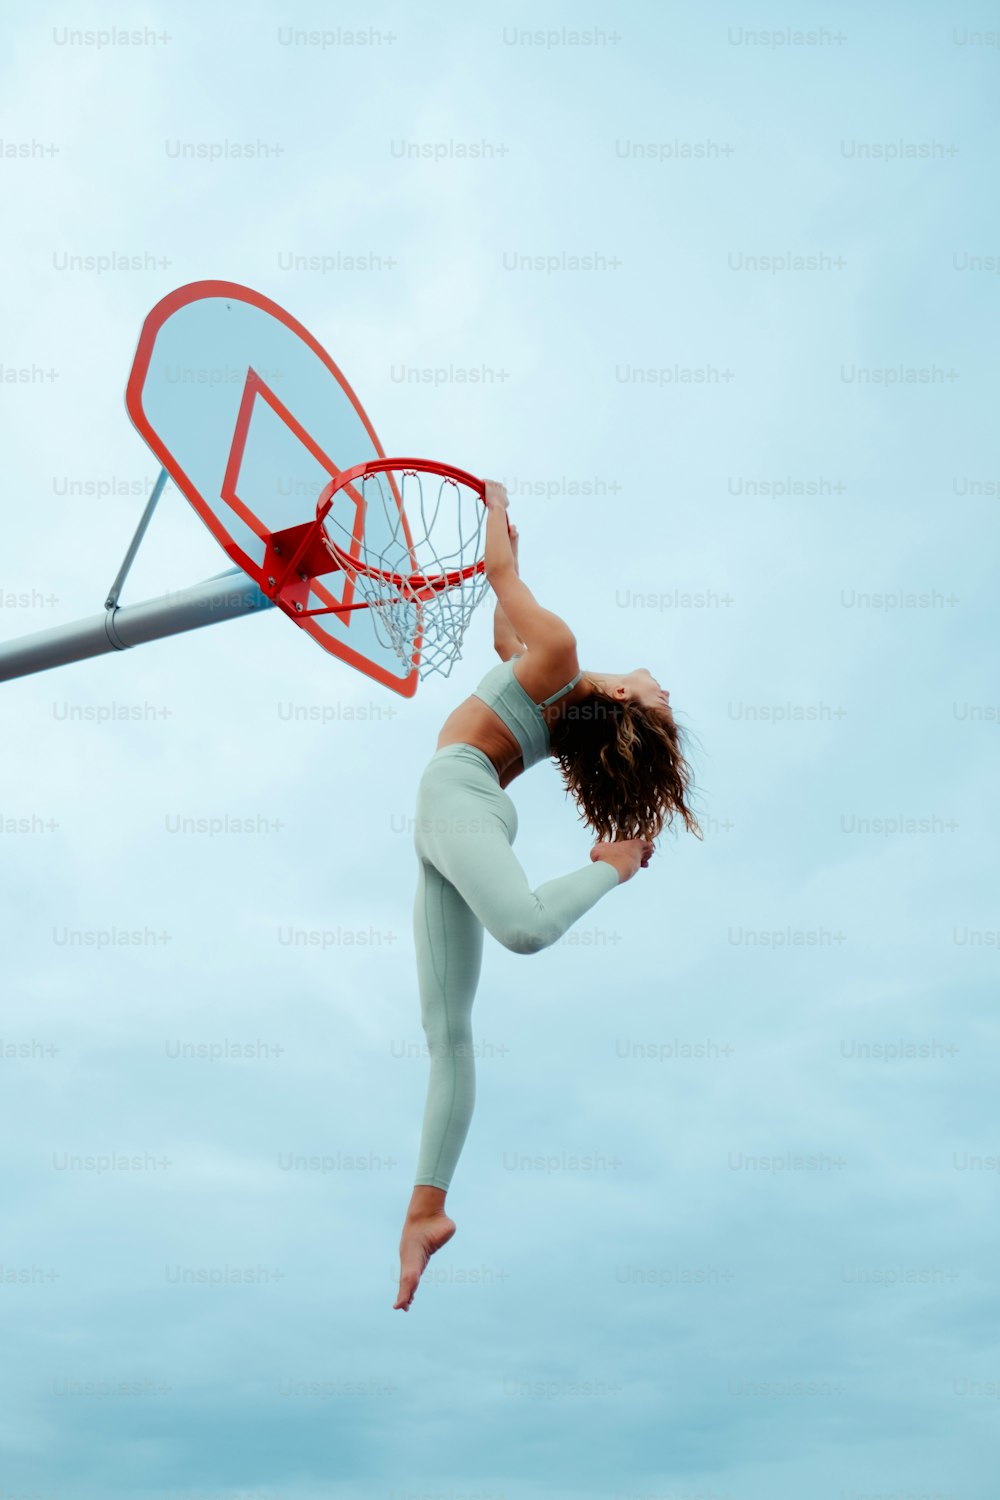 バスケットボールをダンクするために空中に飛び上がる女性